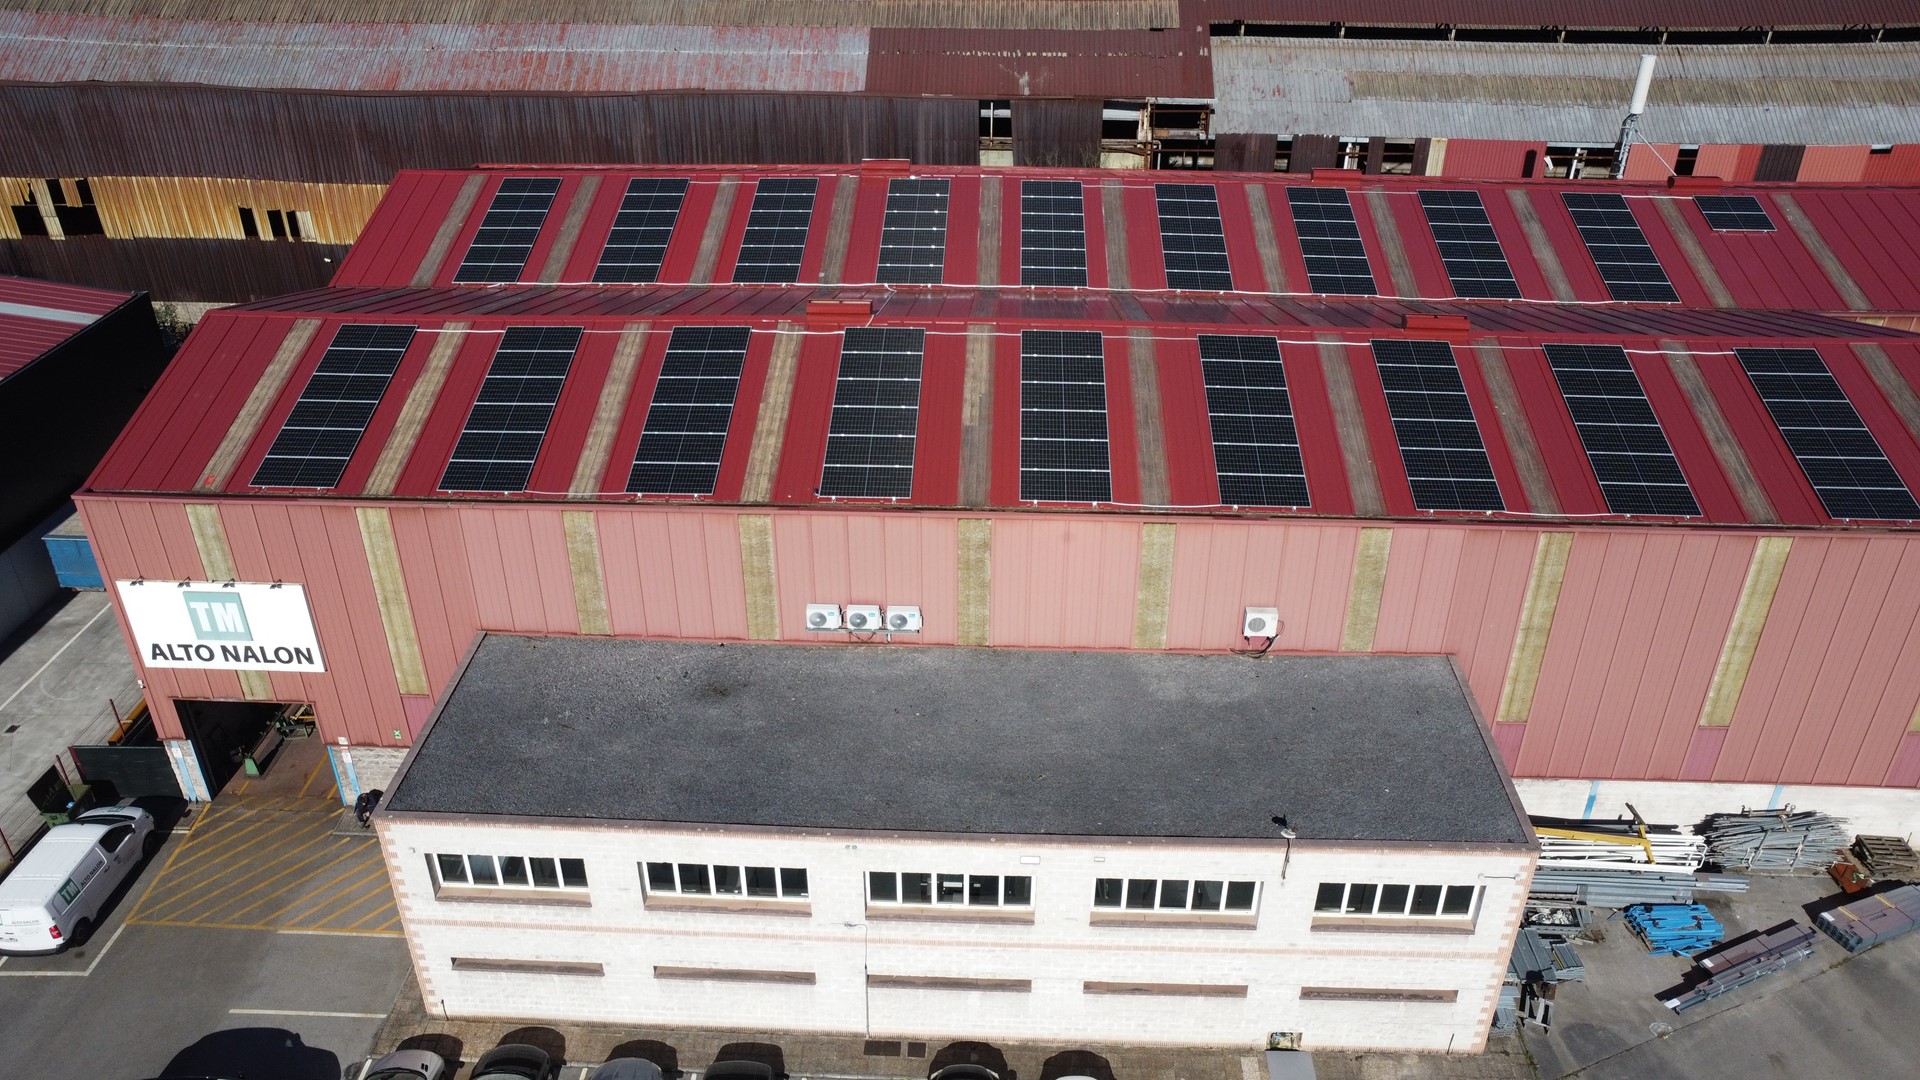 Autoconsumo fotovoltaico en Talleres Metálicos Alto Nalón